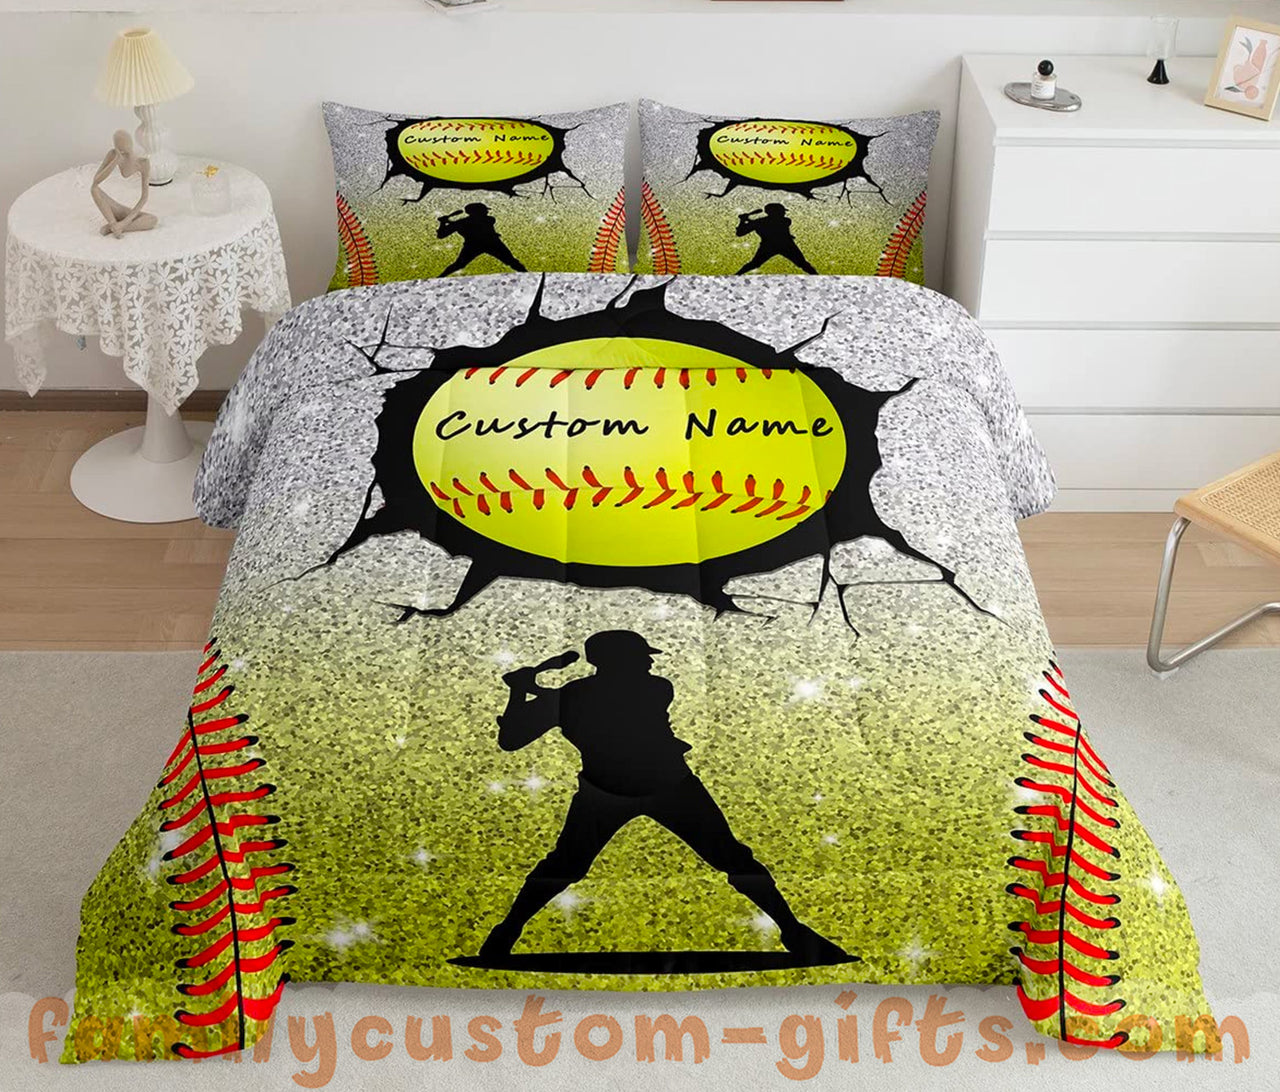 Custom Quilt Sets Baseball Print Premium Quilt Bedding for Boys Girls Men Women